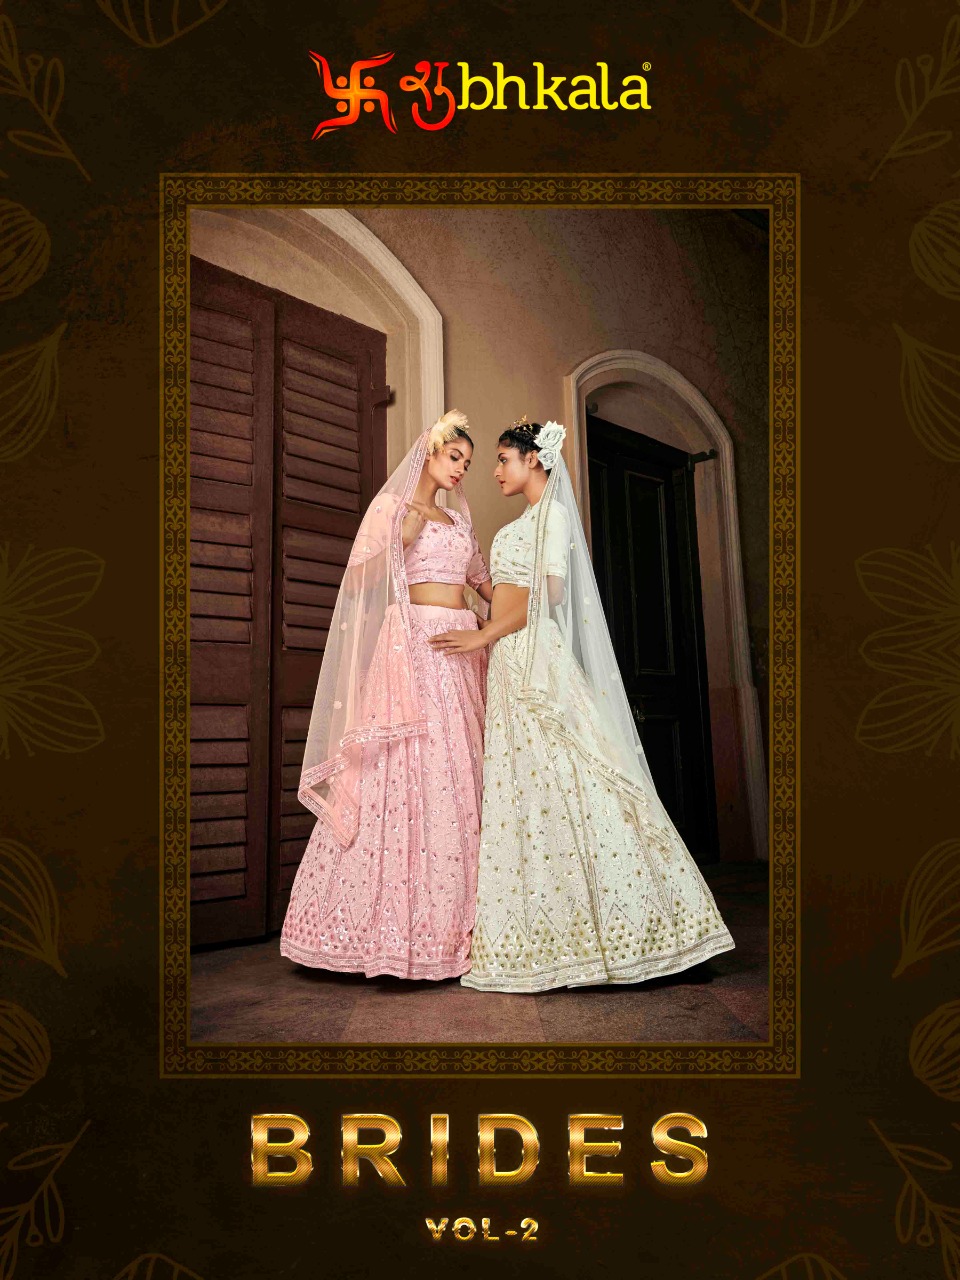 Shubhkala Bride Vol 2 collection 1